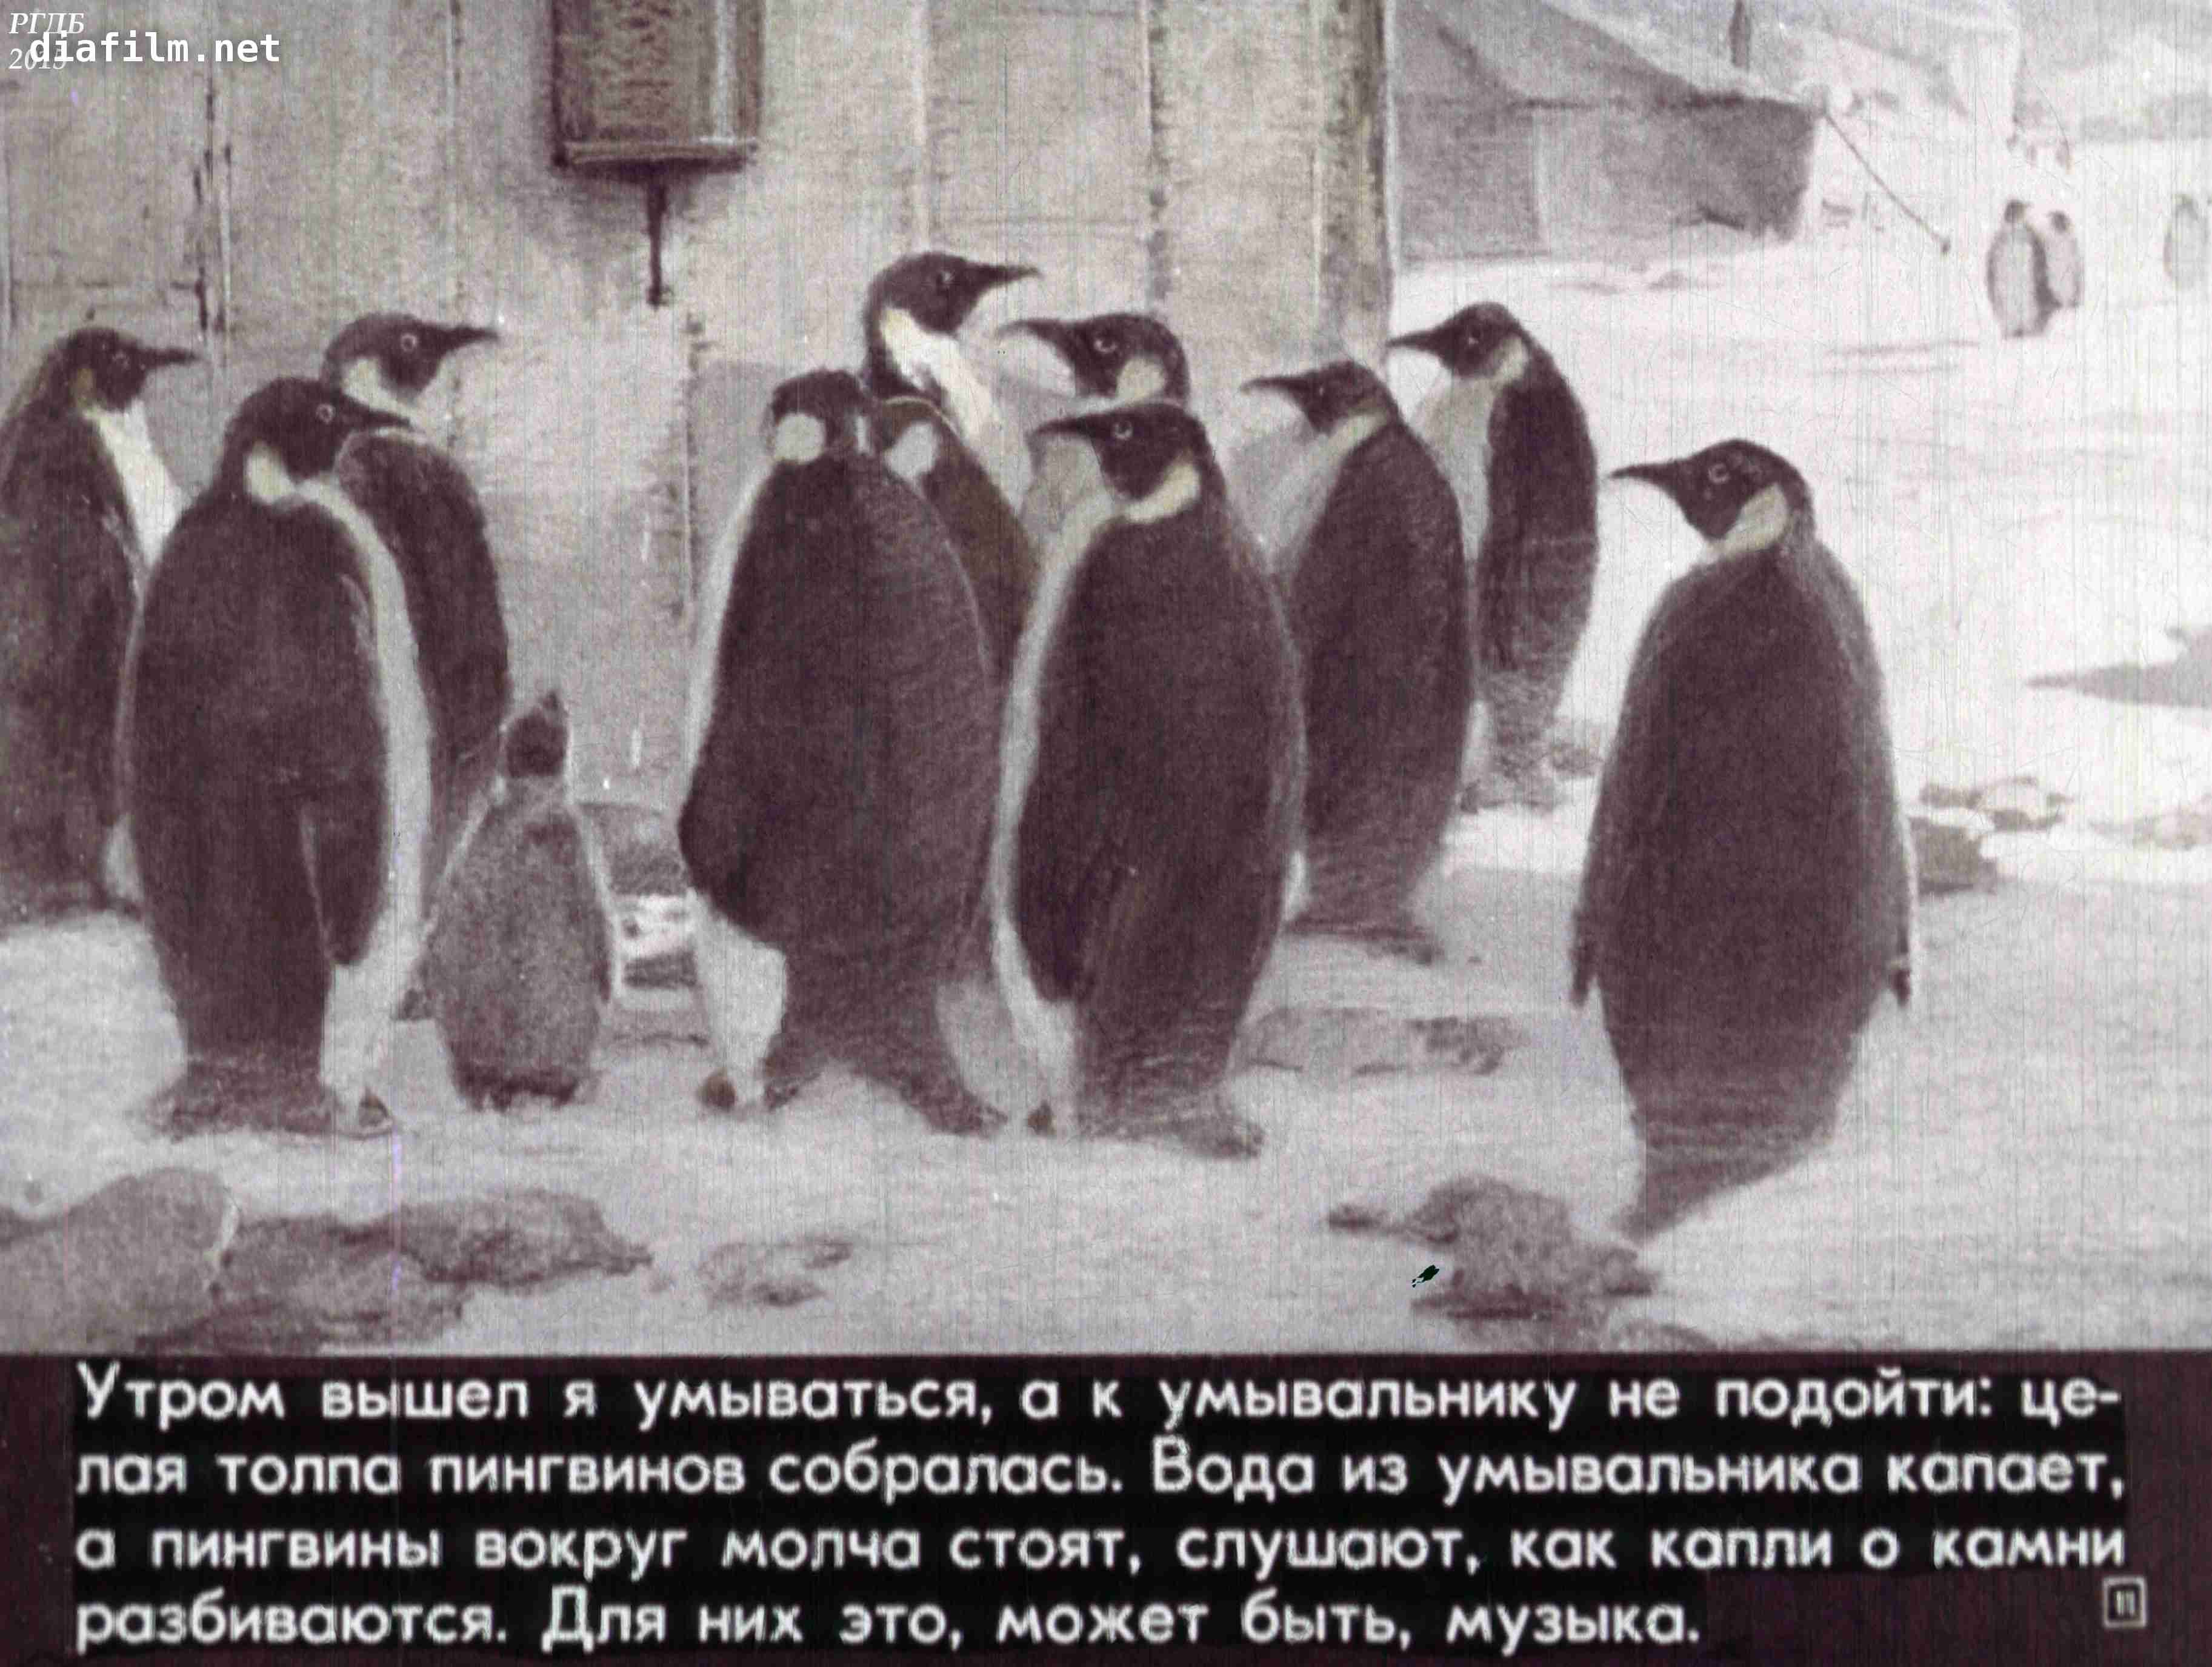 Про пингвинов рассказ читать. Пингвины Снегирев любопытные. Снегирев про пингвинов. Г Снегирева про пингвинов рассказ.